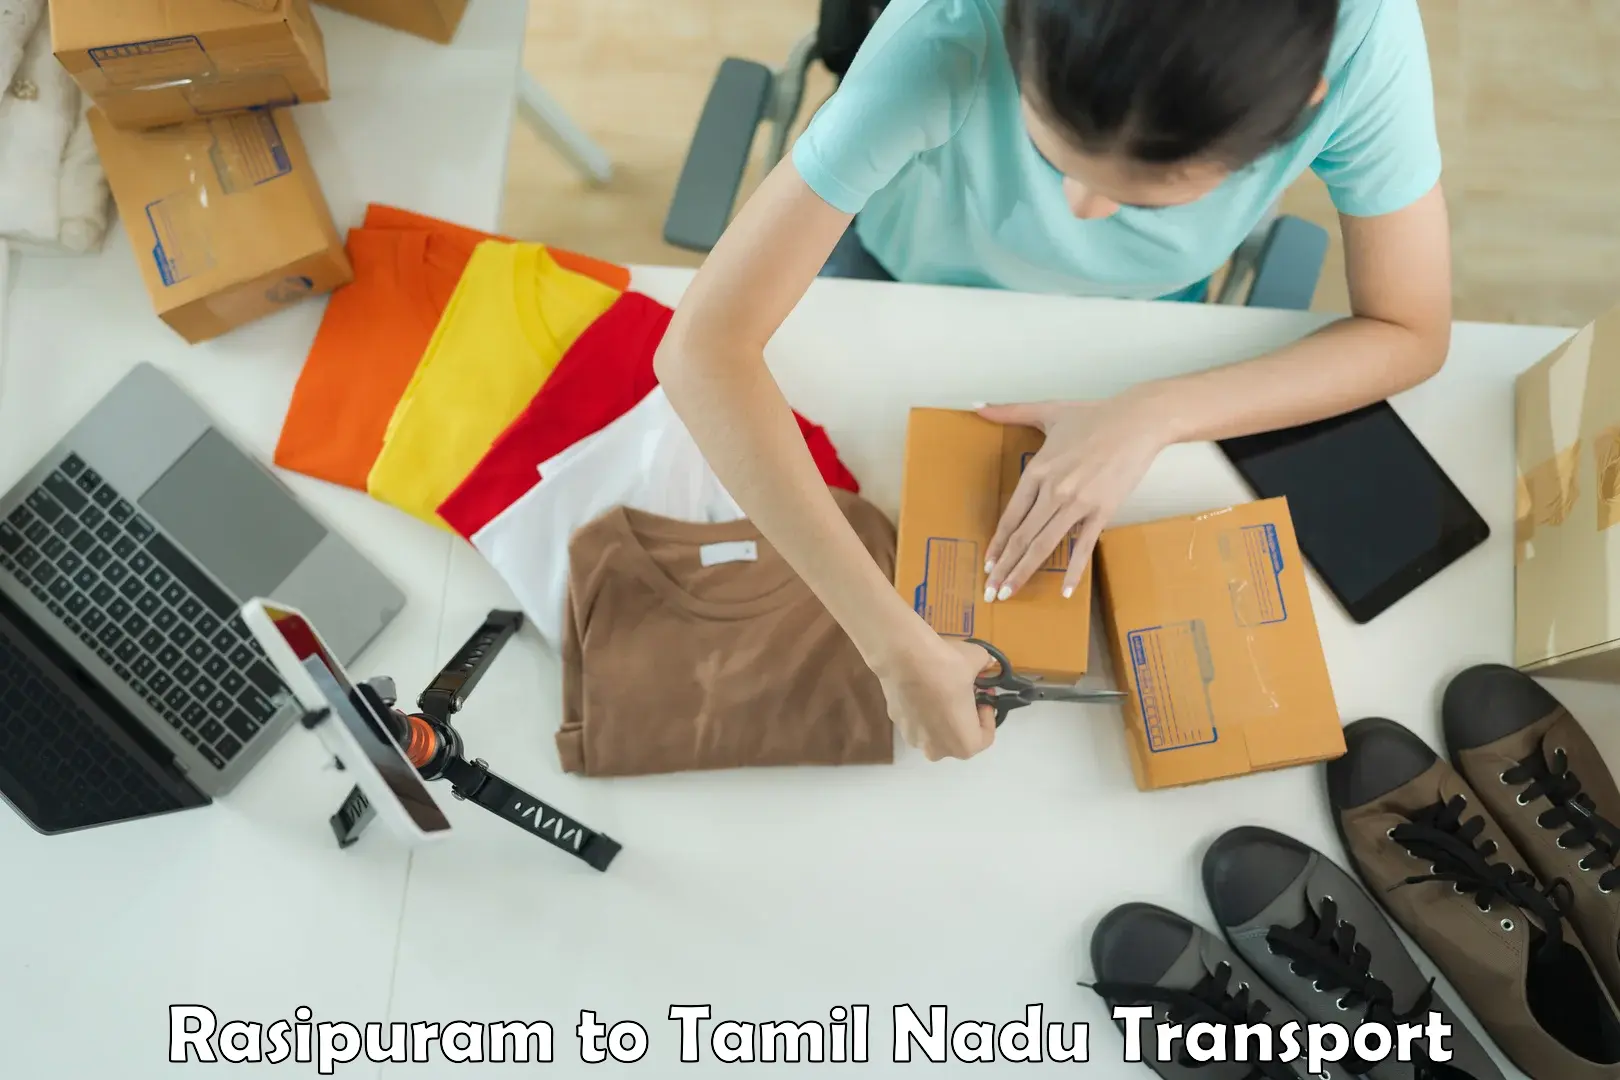 Pick up transport service Rasipuram to Velur